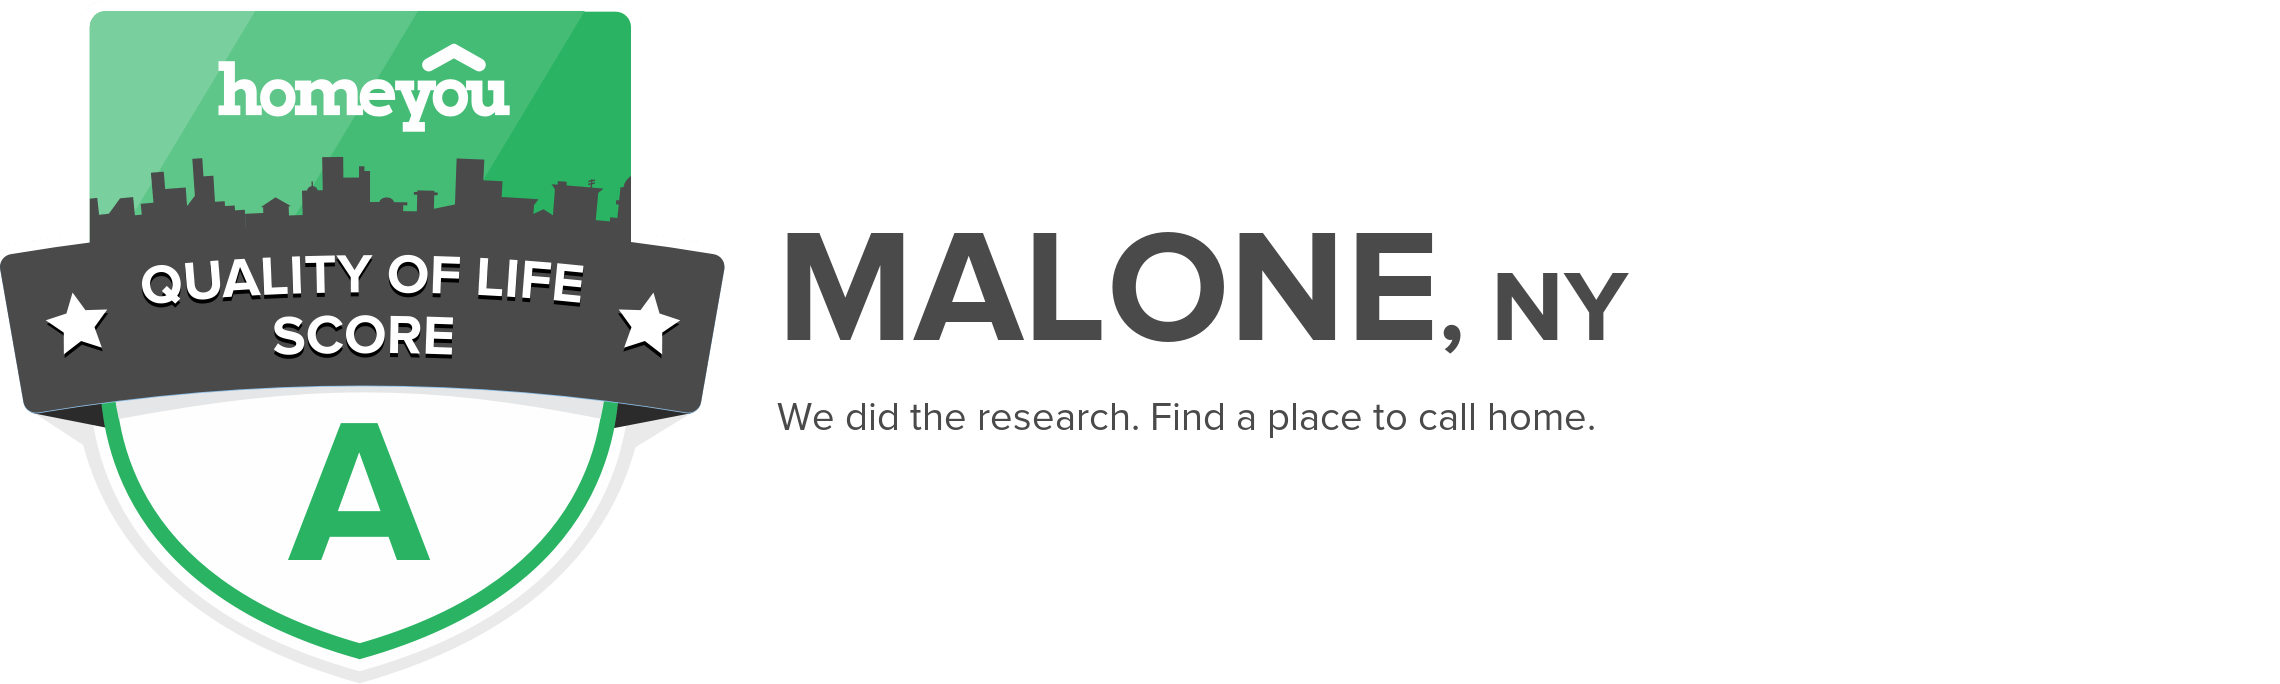 Malone, NY